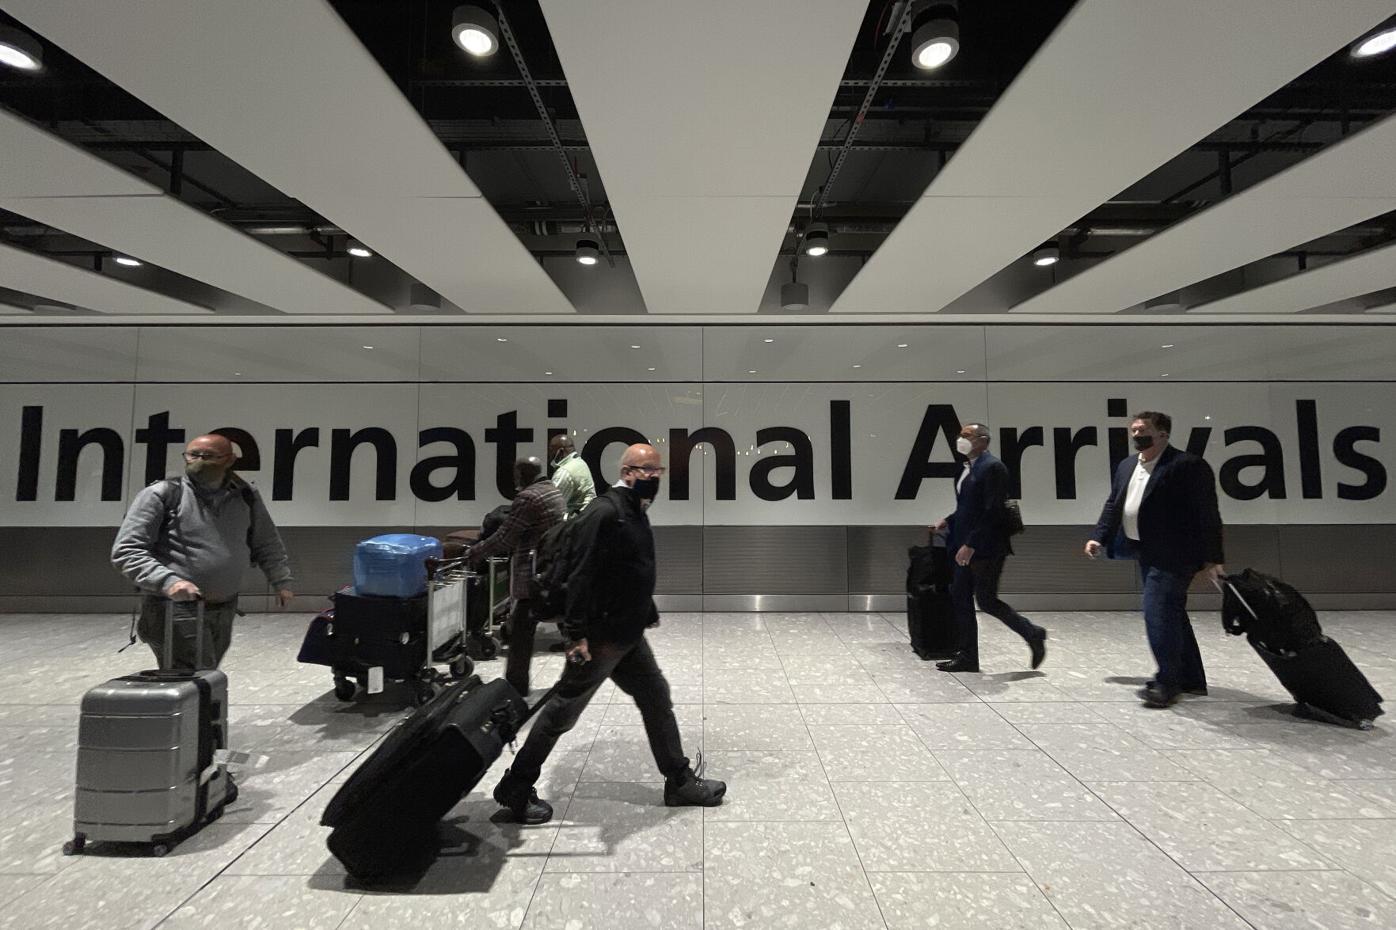 Travel doors slam shut as new Covid variant triggers alarm, stranding hundreds of passengers